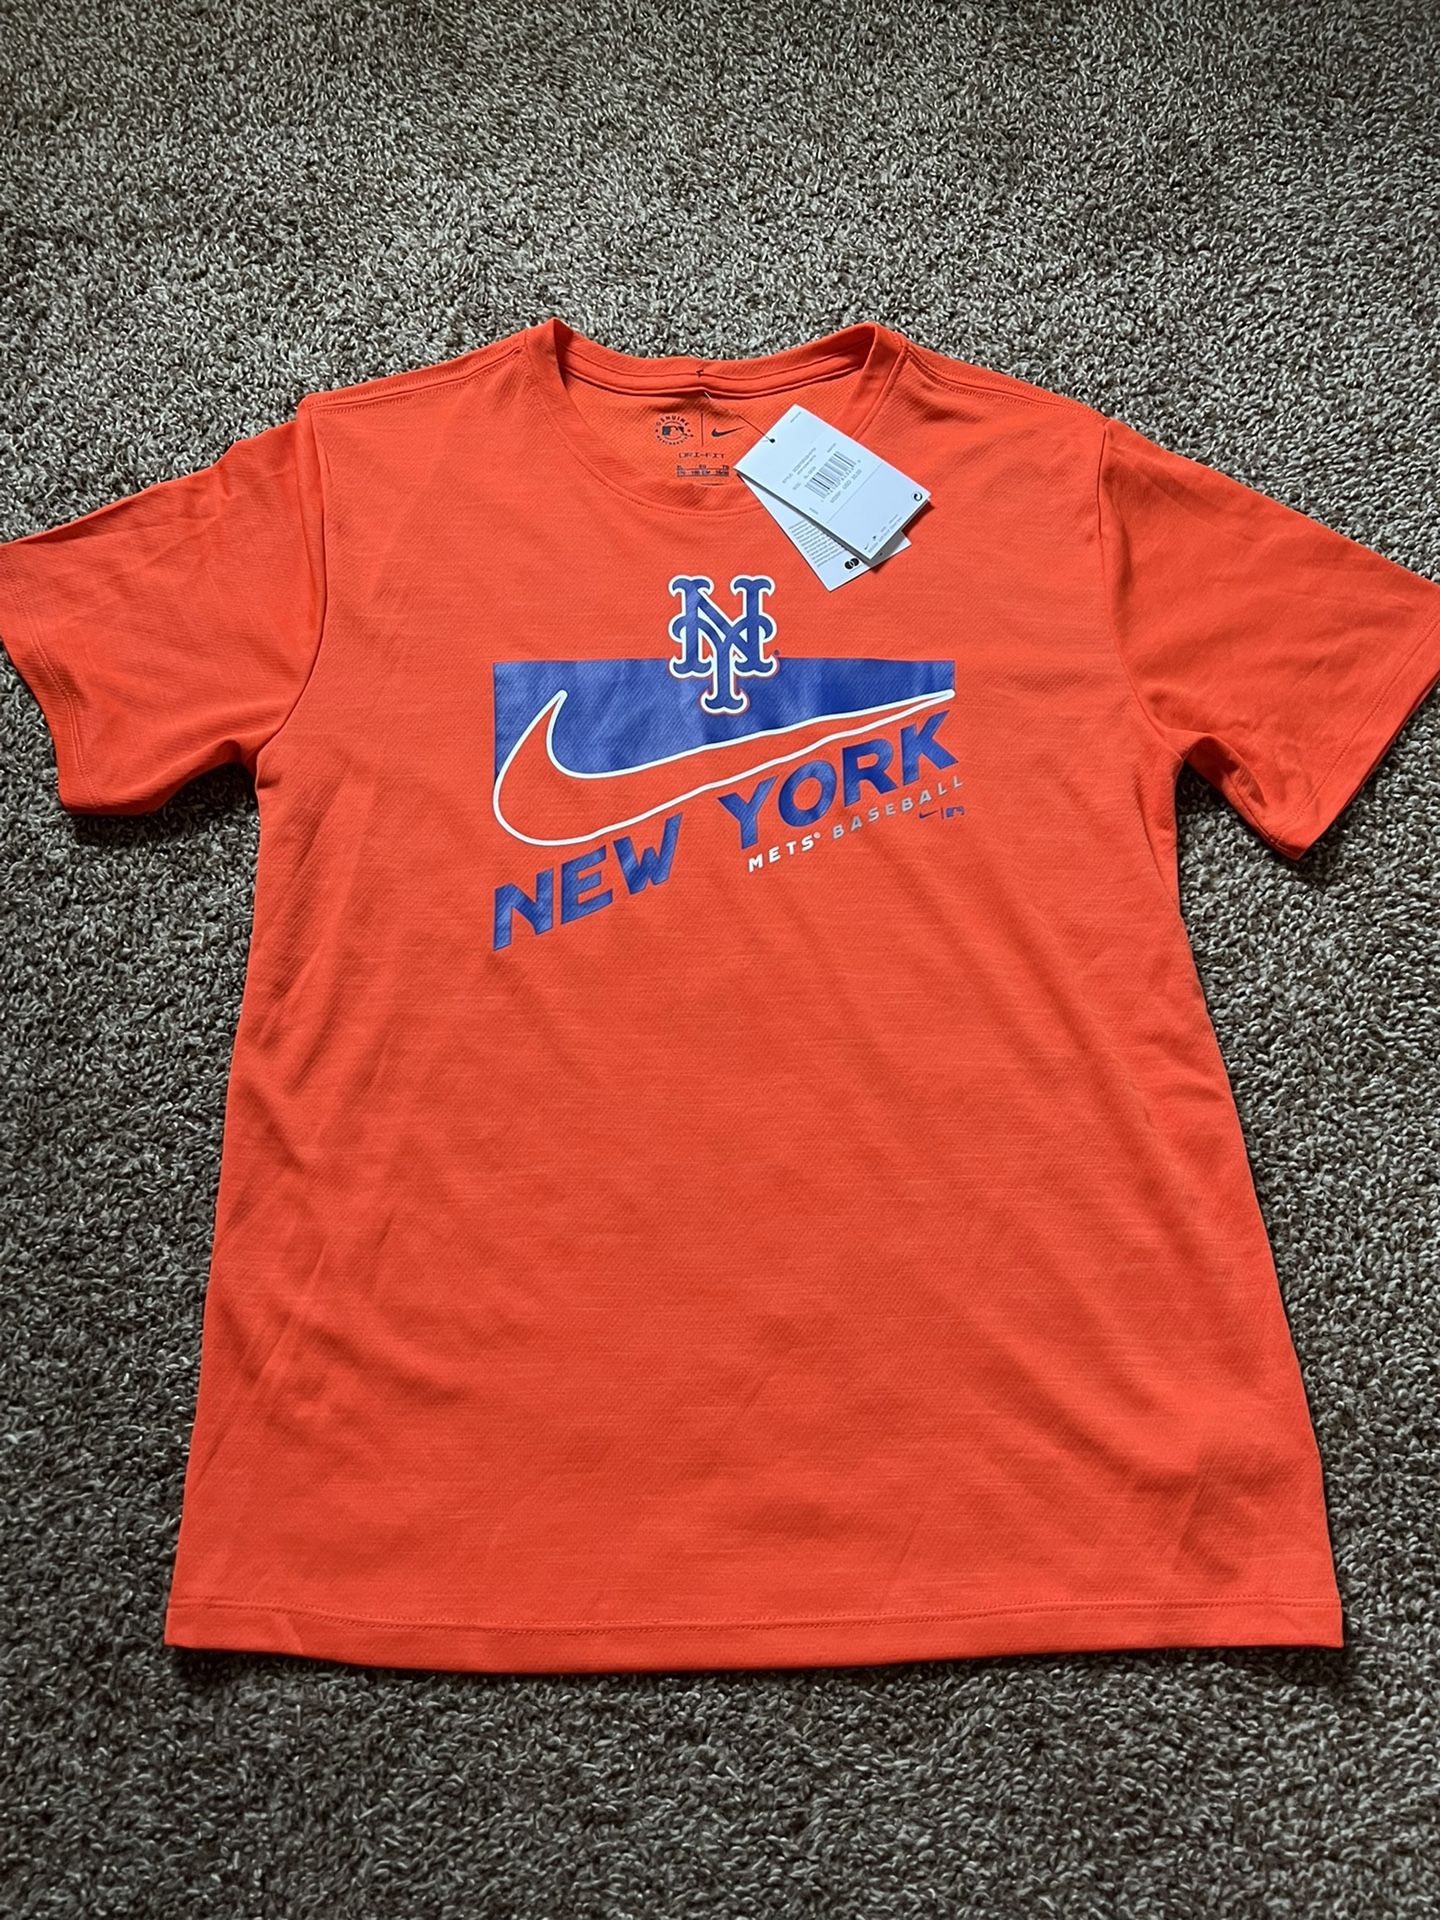 XXL) New Nike New York City Dri-Fit Shirt